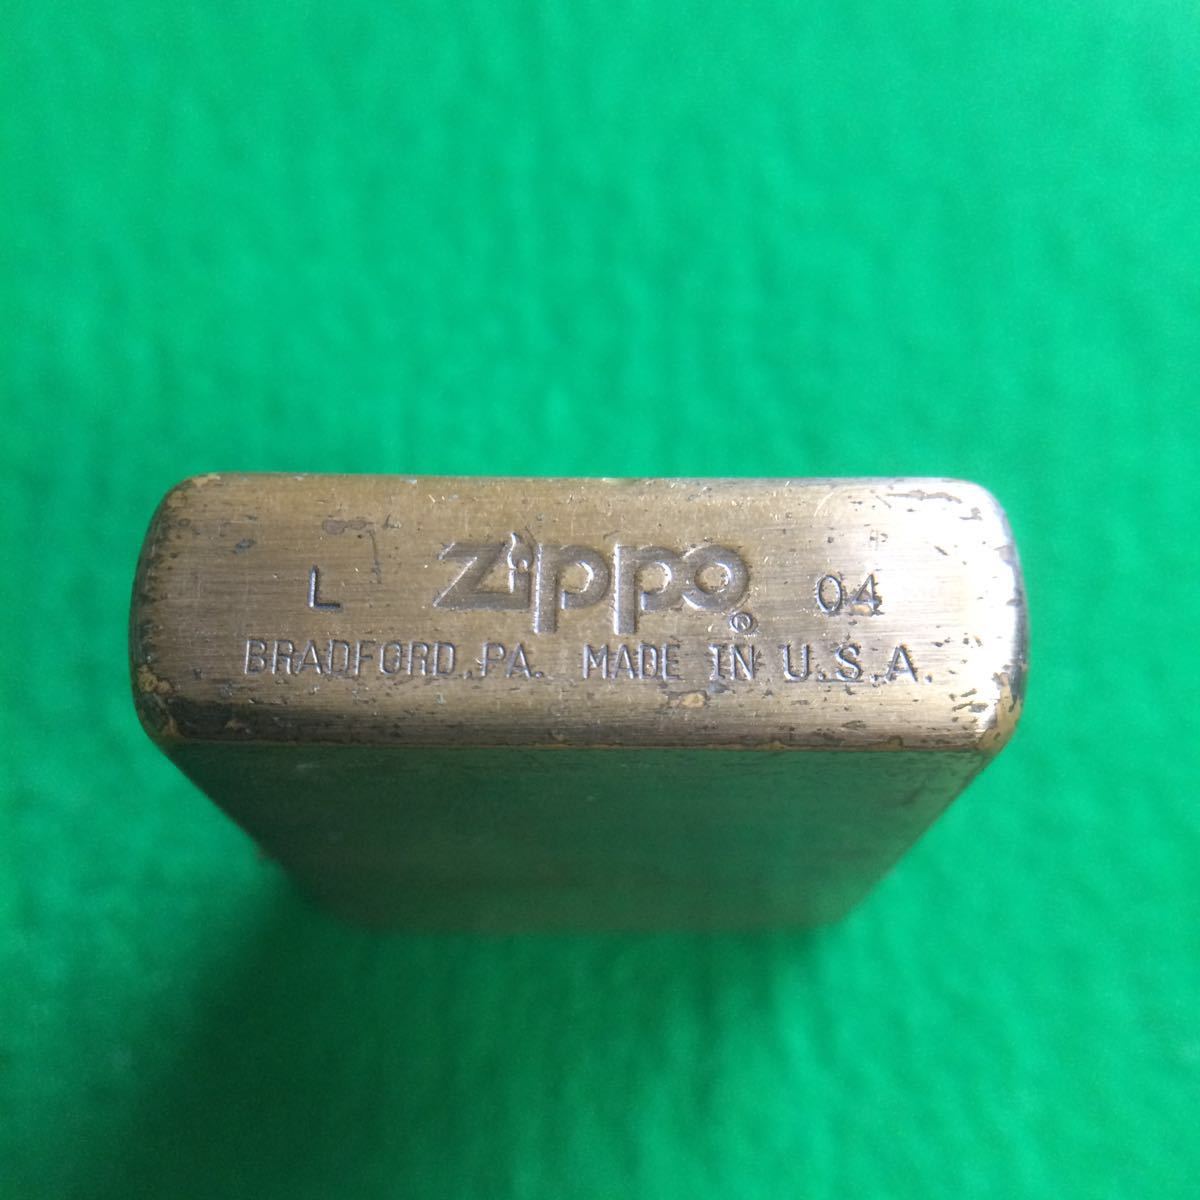 Zippo ジッポー ZIPPO IS THE BEST SELECTION SINCE 1932 U.S.A. アンティーク コレクション ライター 古いジッポ (115)_画像3